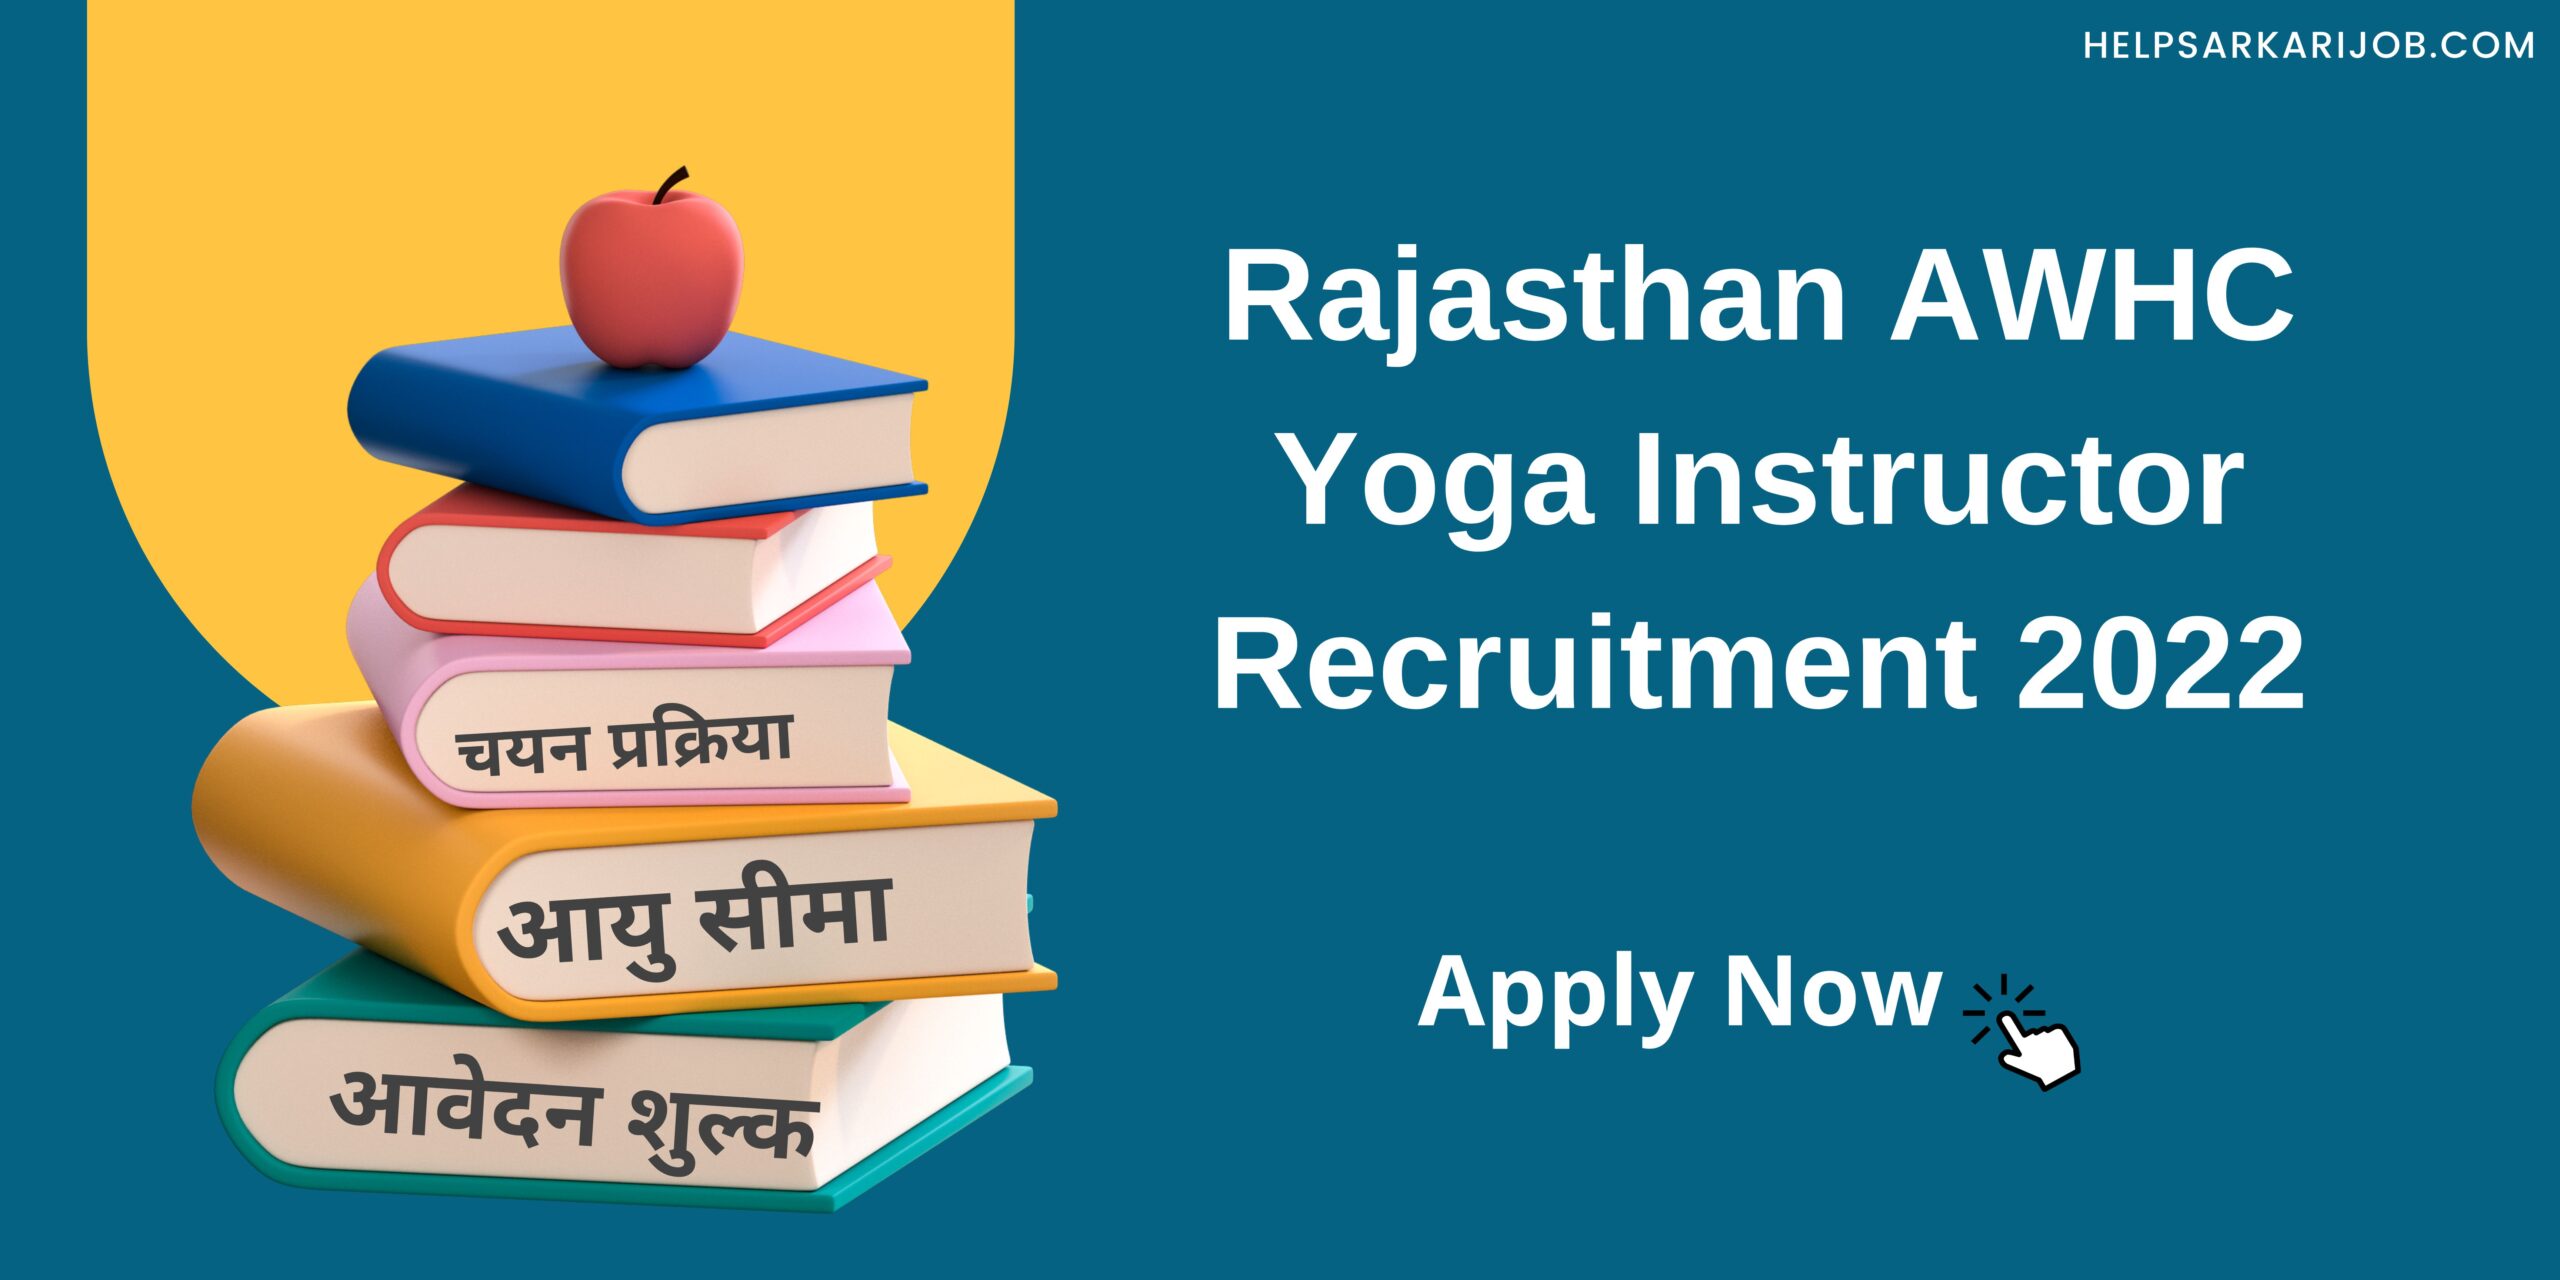 Rajasthan AWHC Yoga Instructor Recruitment 2022 scaled -